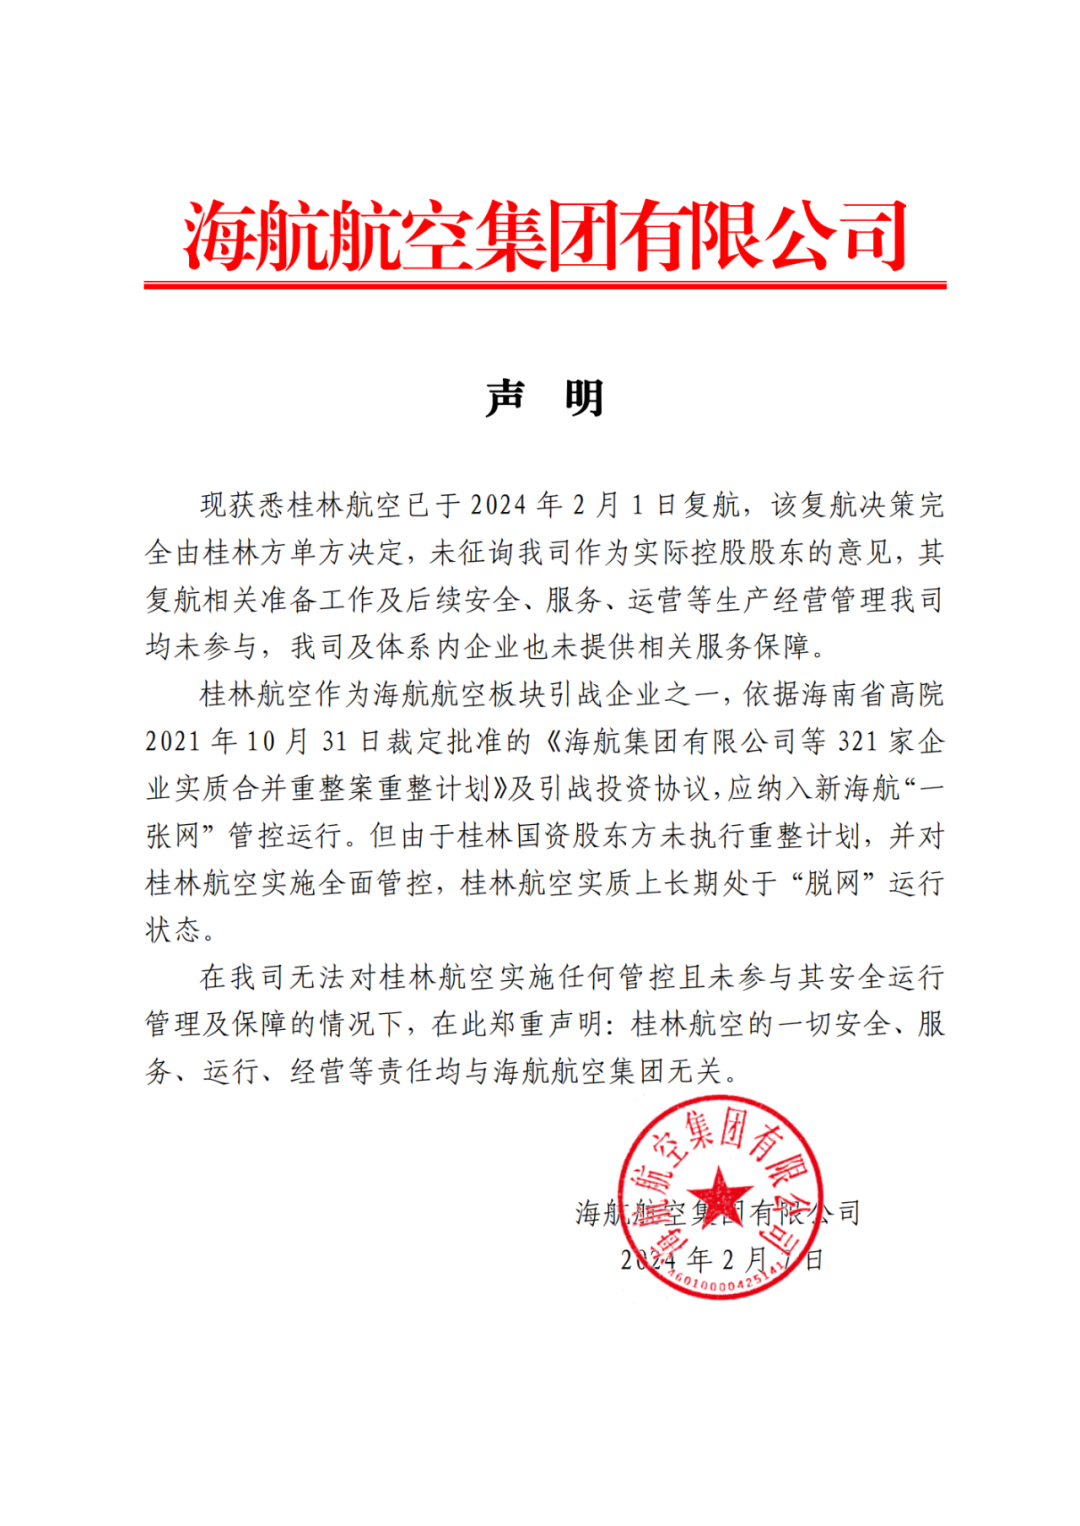 海航航空集团声明：桂林航空复航决策完全由桂林方单方决定，未征询公司作为实际控股股东的意见